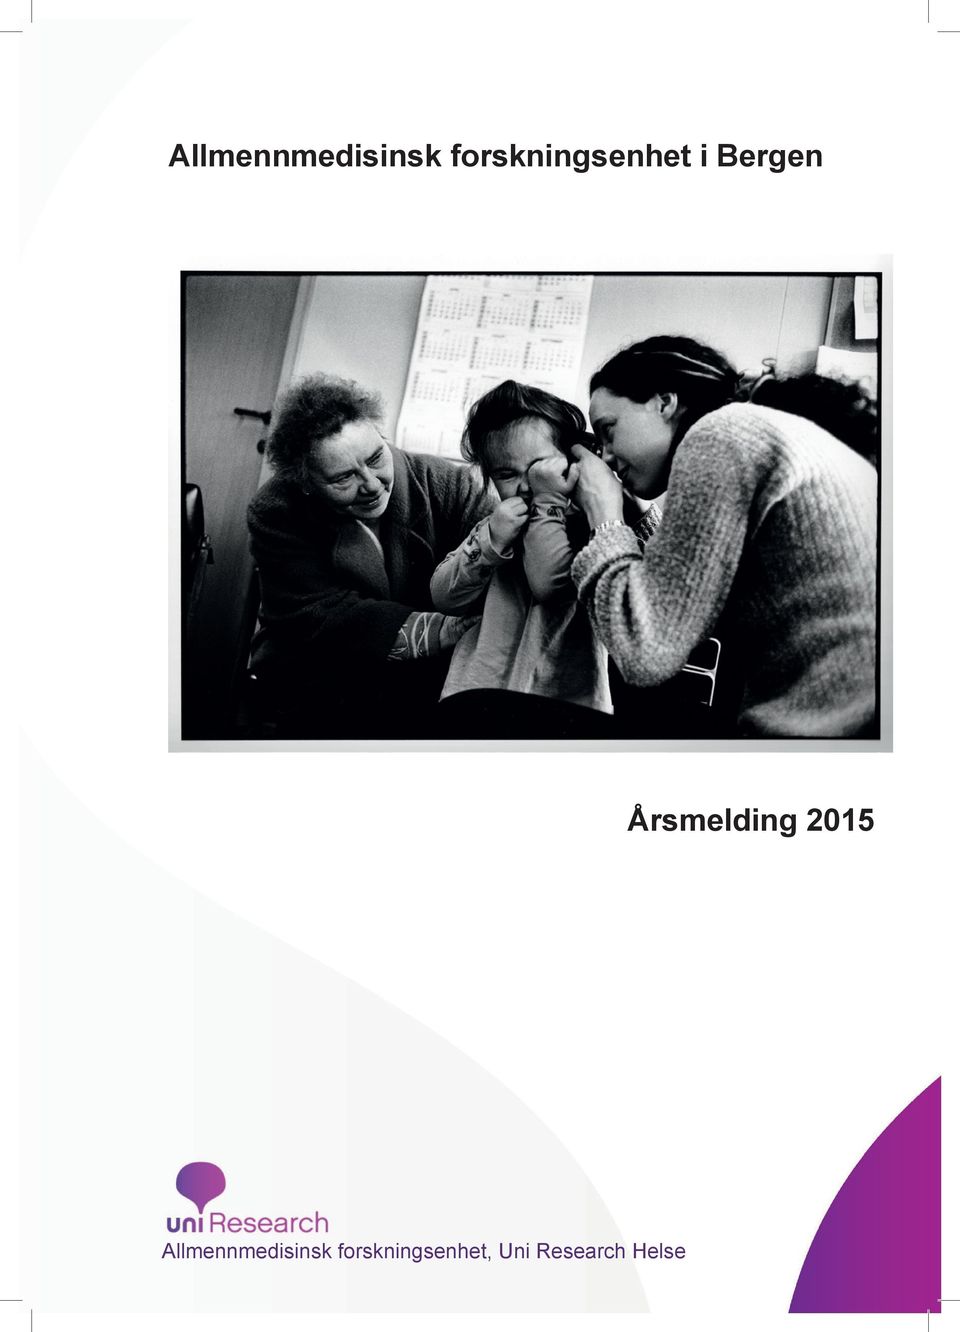 forskningsenhet i Bergen Årsmelding 2015 Allmennmedisinsk forskningsenhet i Bergen